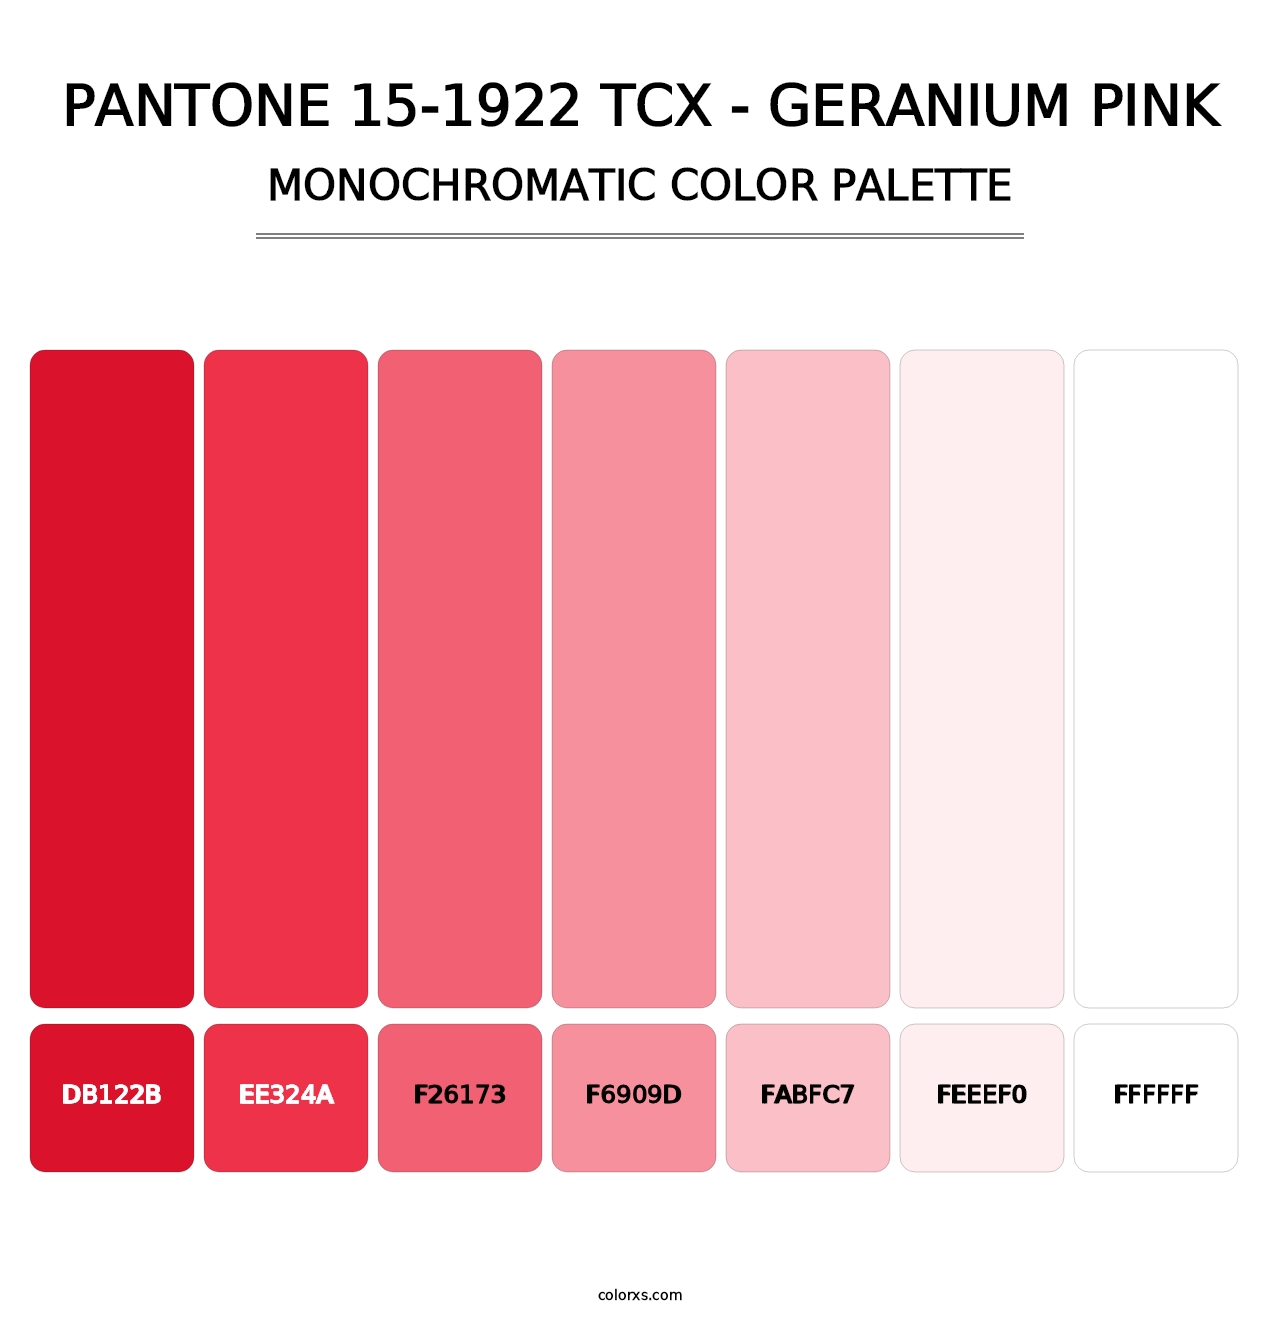 PANTONE 15-1922 TCX - Geranium Pink - Monochromatic Color Palette